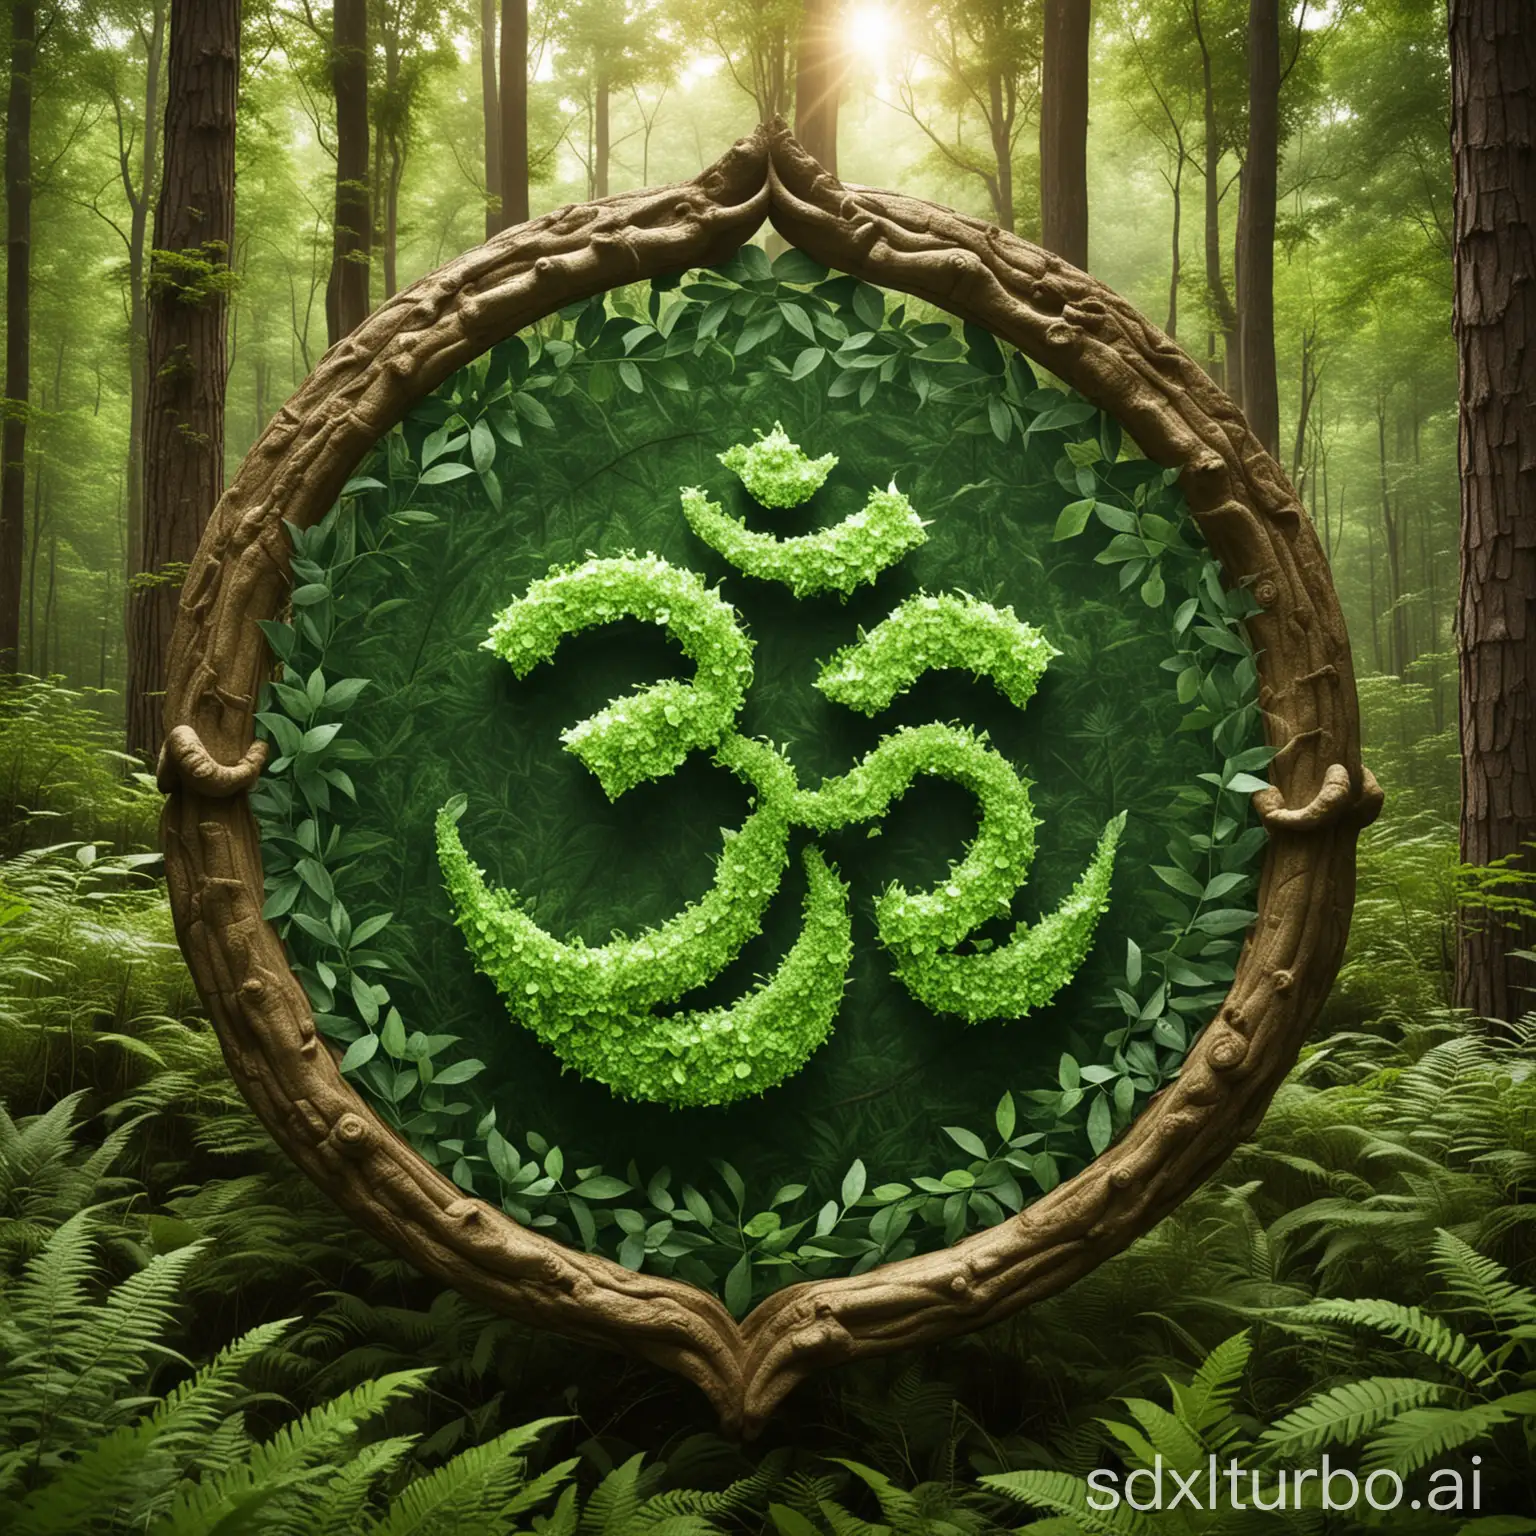 Forest-Green-Surrounds-Sacred-Om-Symbol